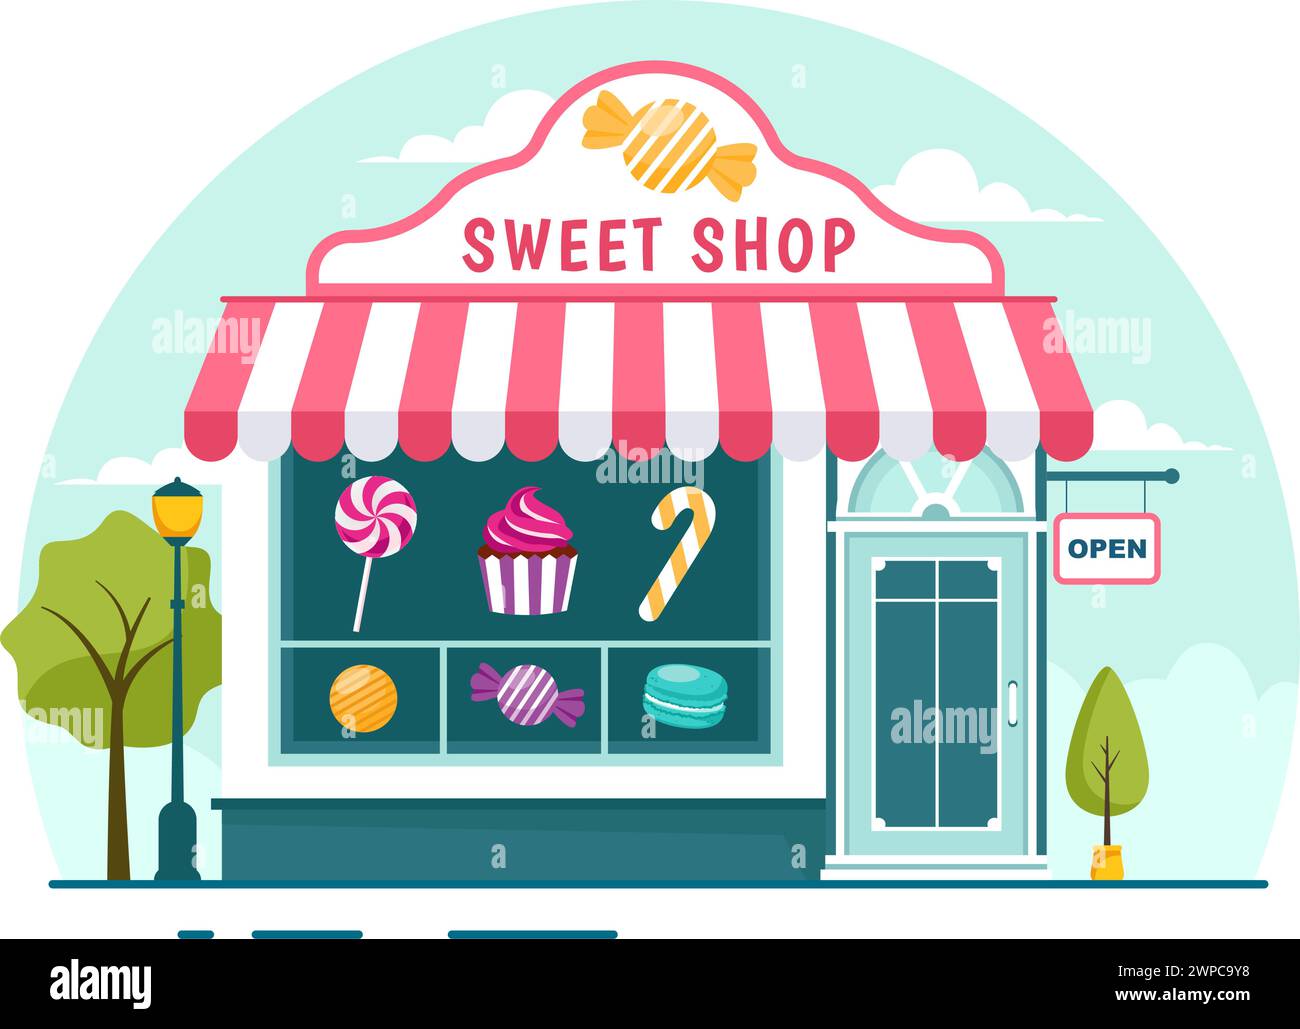 Illustrazione di un vettore del negozio di dolciumi con la vendita di vari prodotti da forno, torte, torte, pasticceria o caramelle in un design di sfondo a forma di cartoni animati Illustrazione Vettoriale